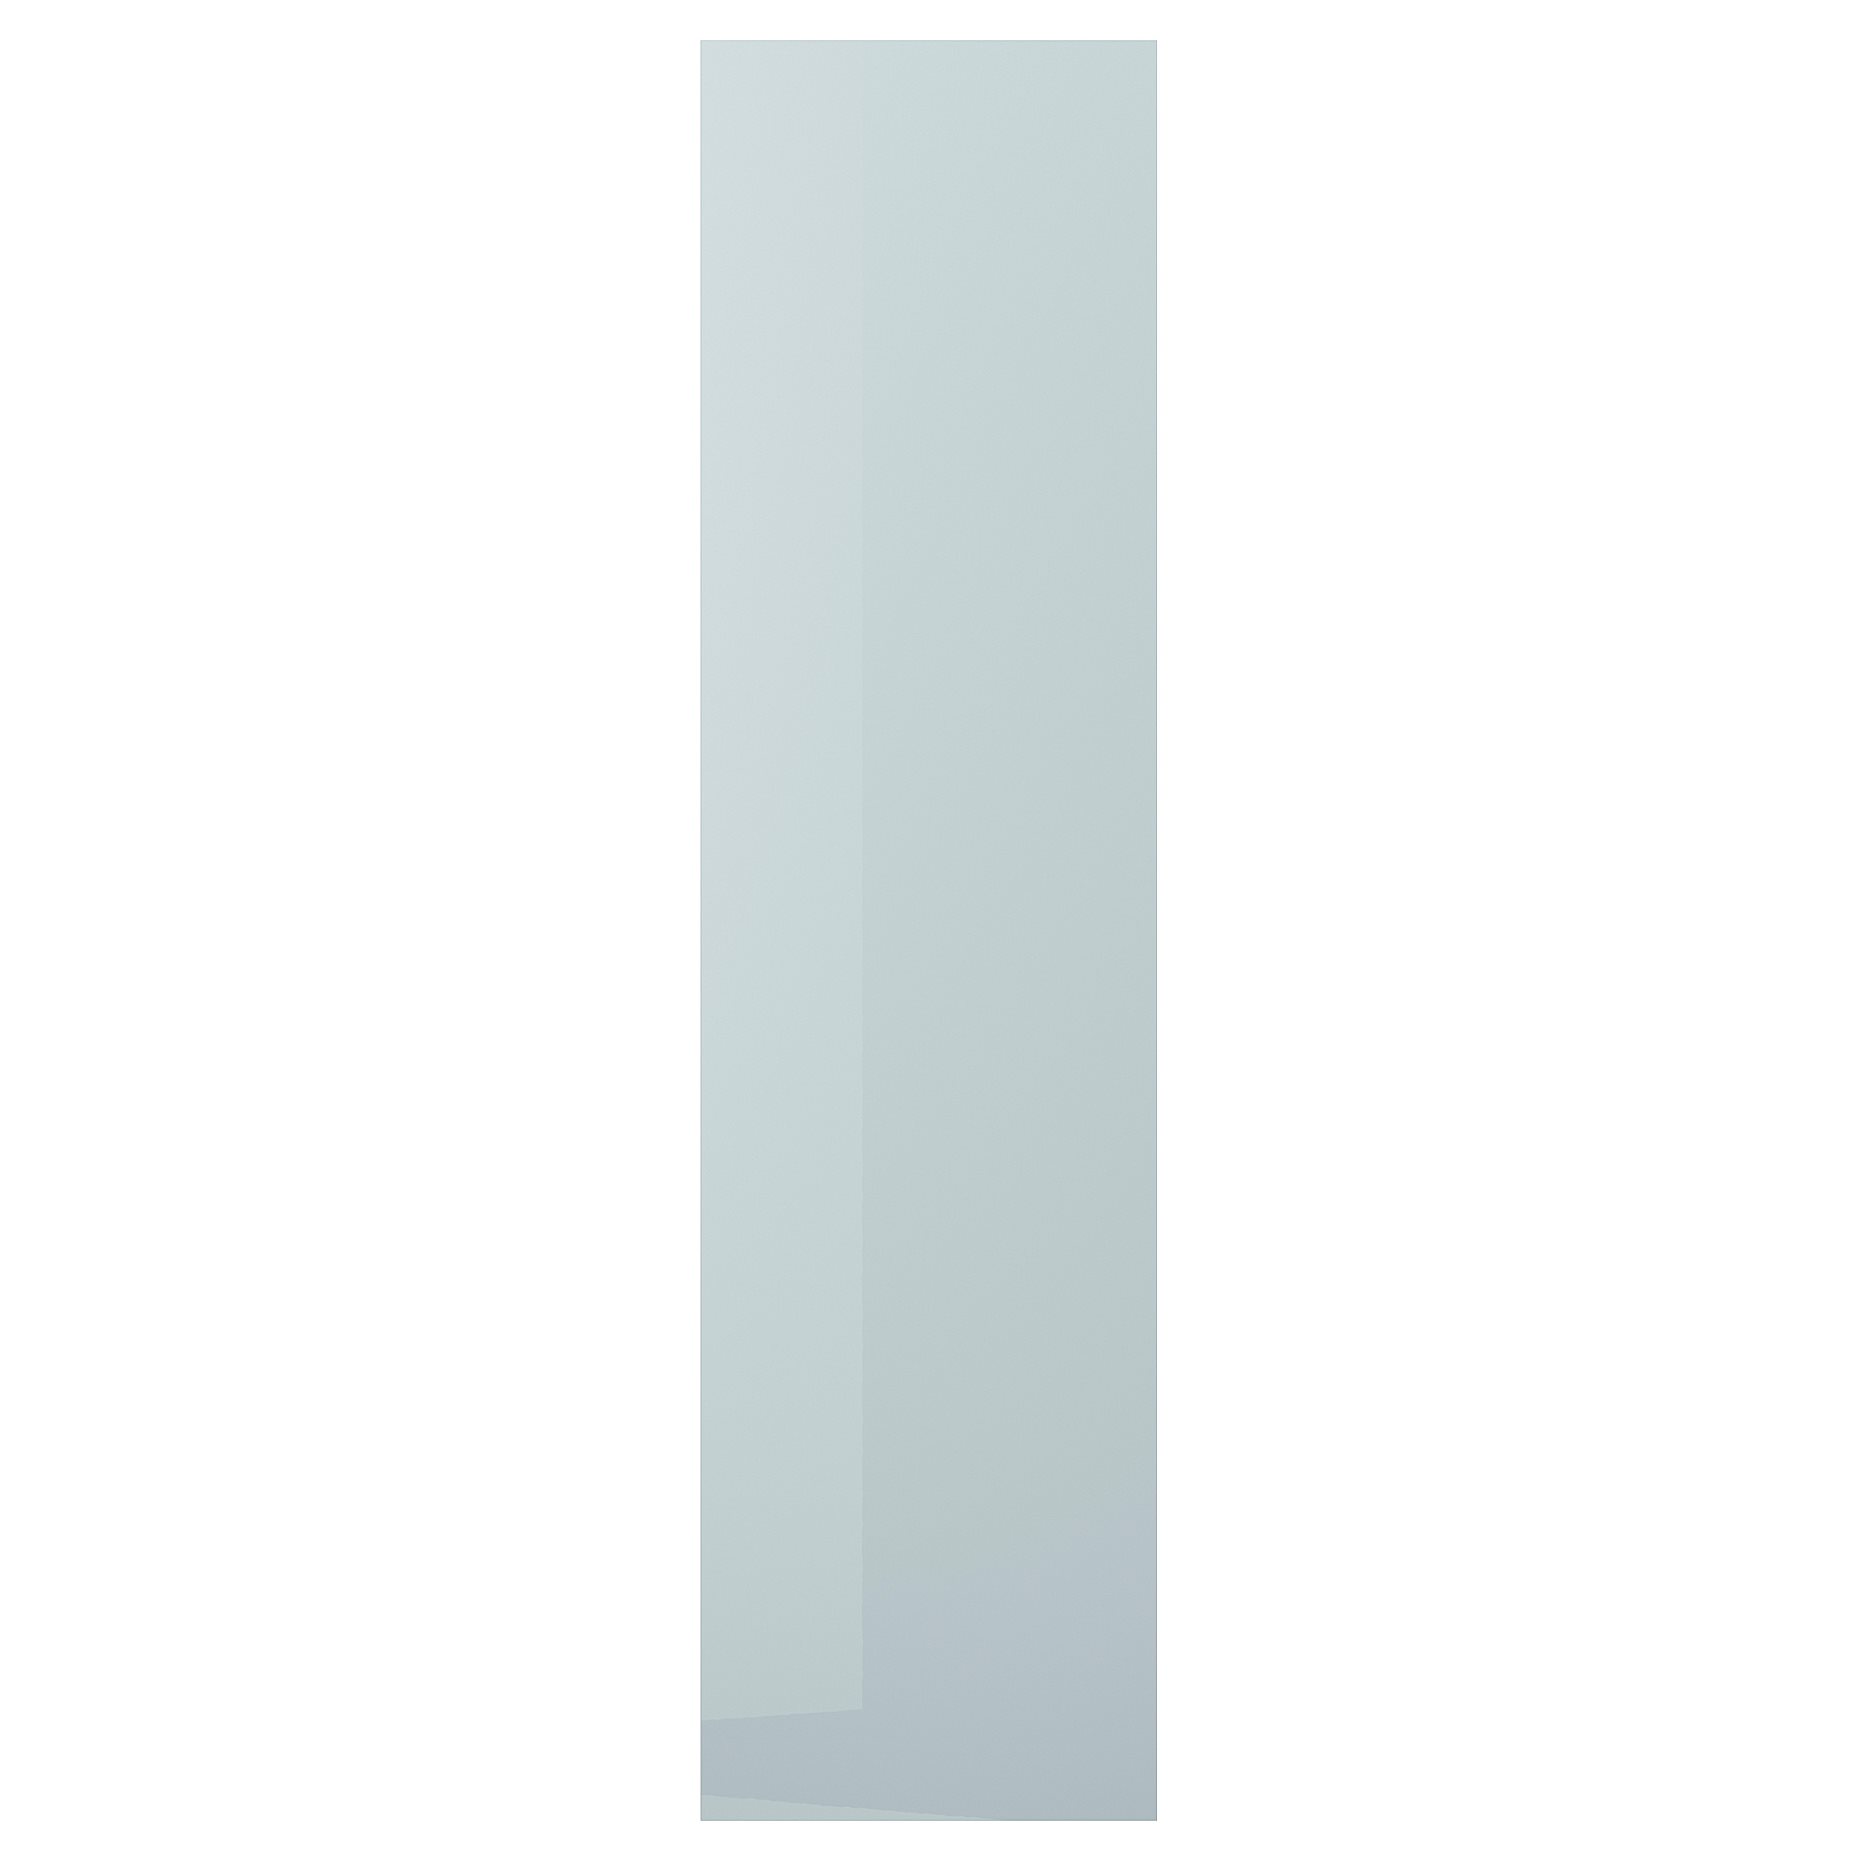 KALLARP, πλαϊνή επιφάνεια/γυαλιστερό, 62x240 cm, 005.201.33